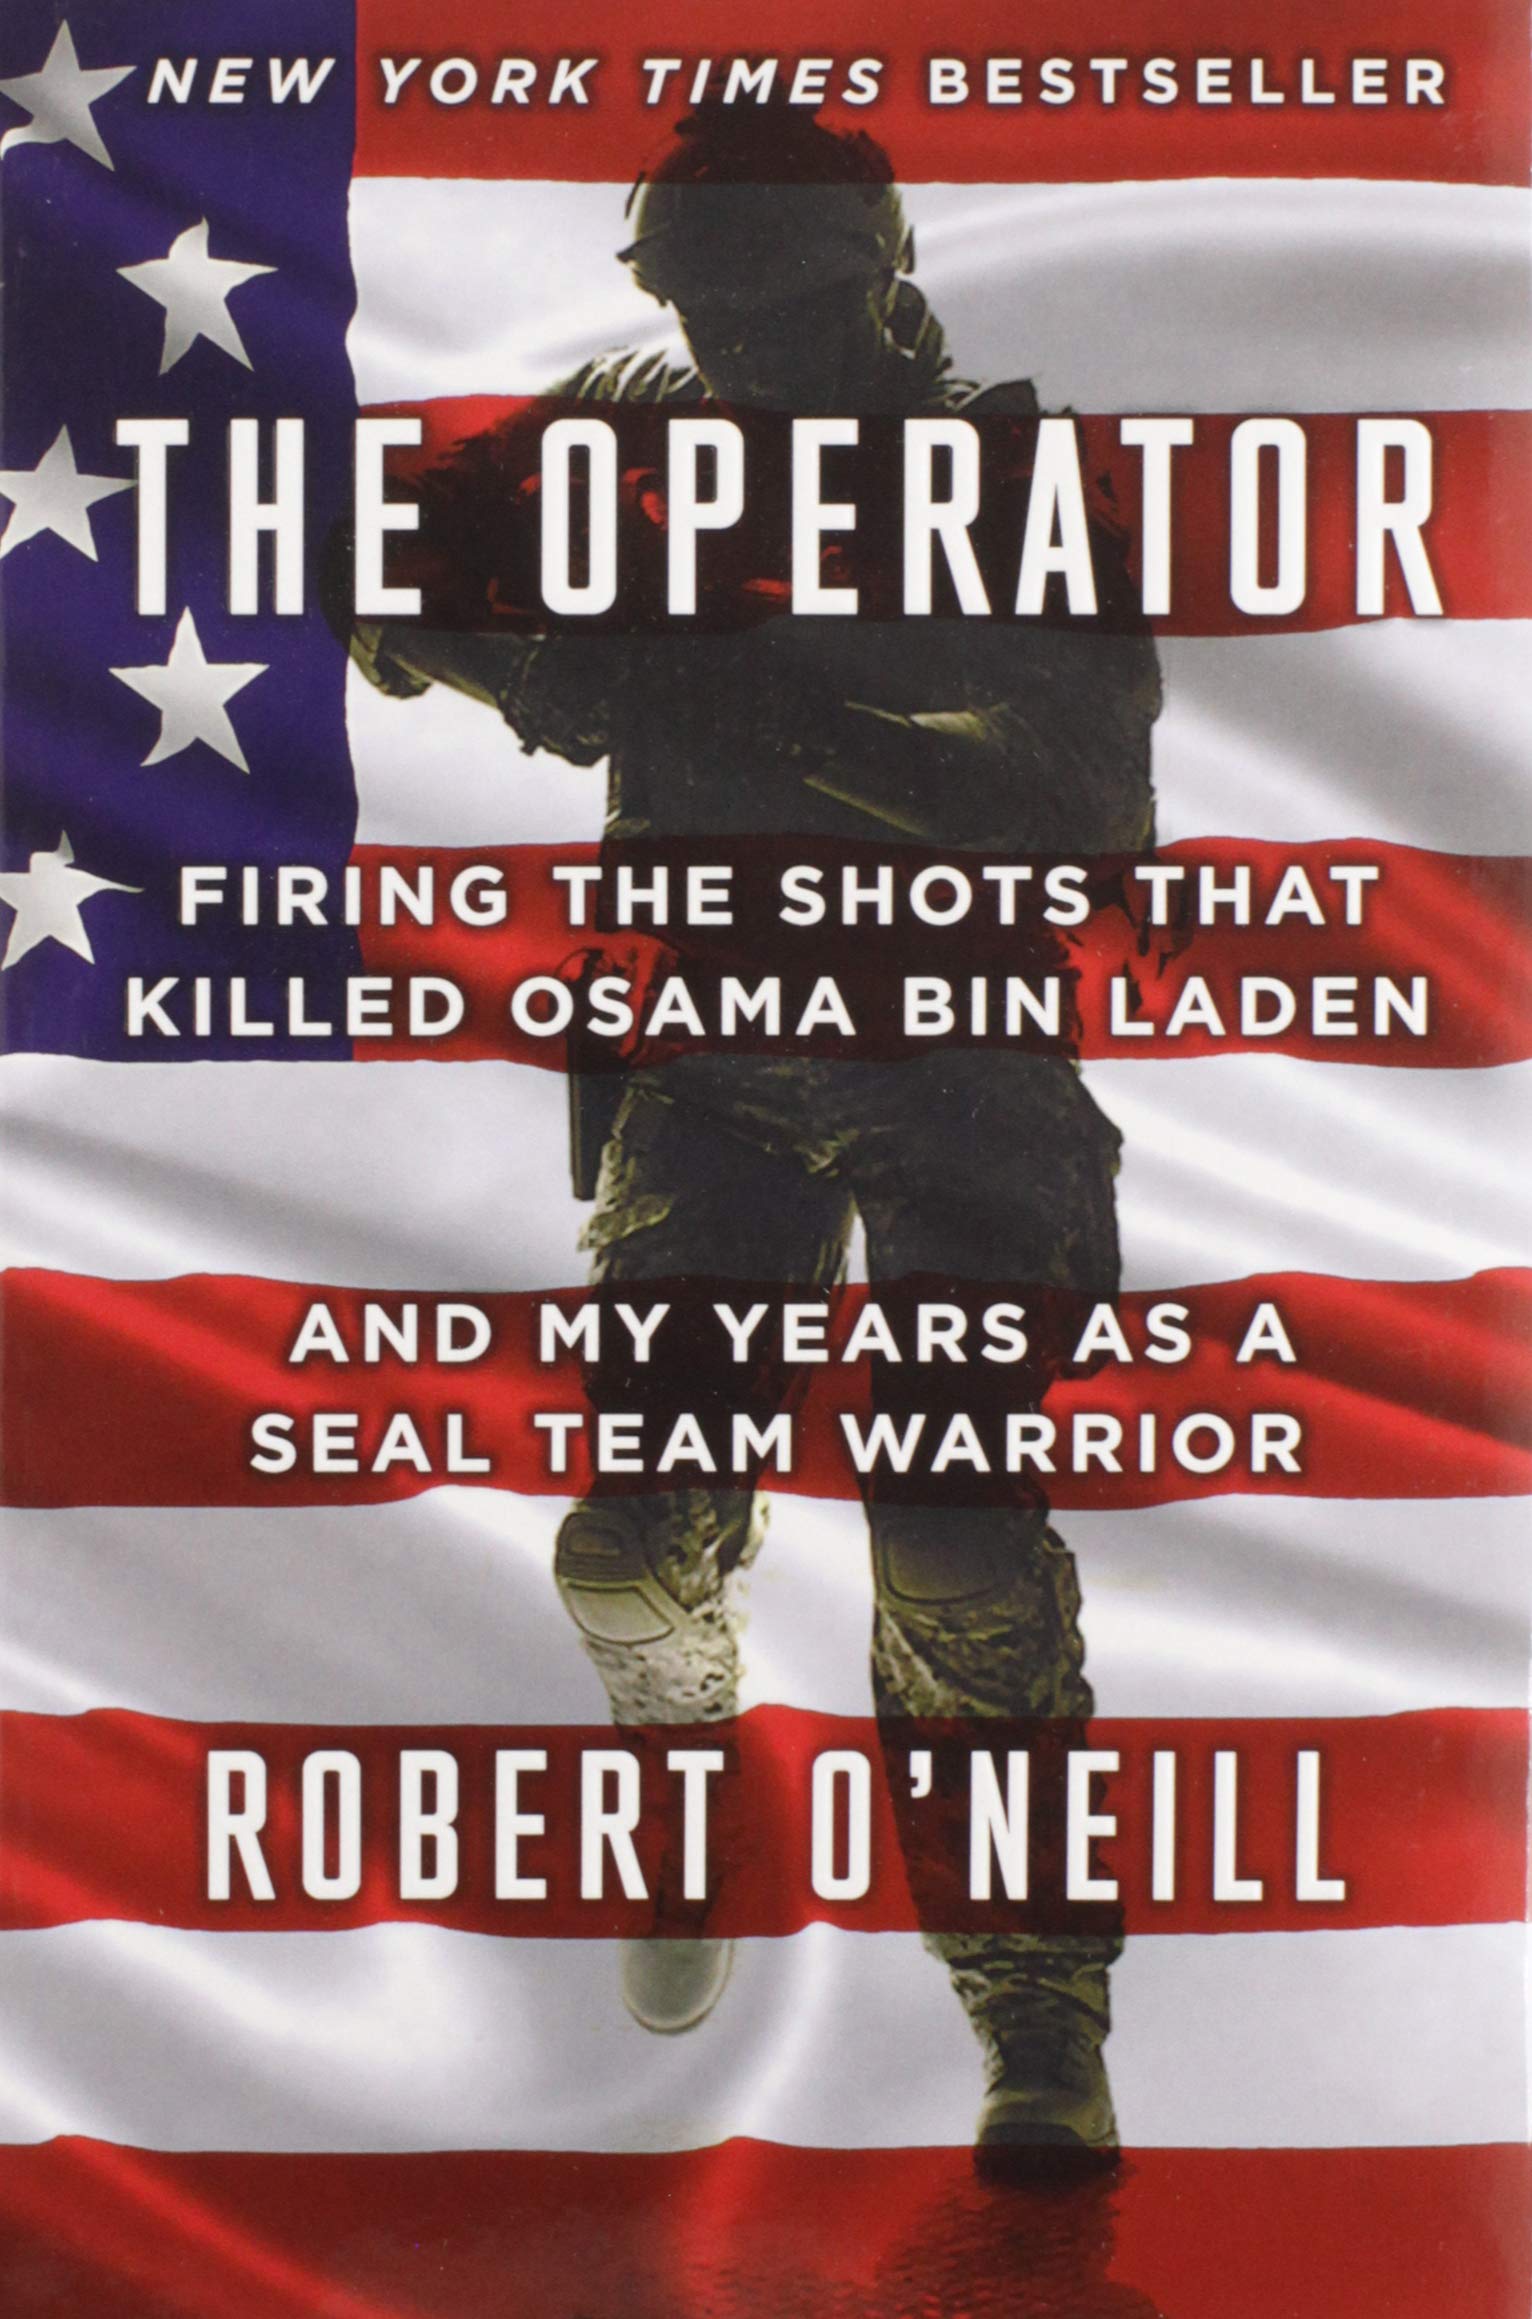 We The People: Rob O’Neill, ¿el hombre que mató a Osama Bin Laden? 6